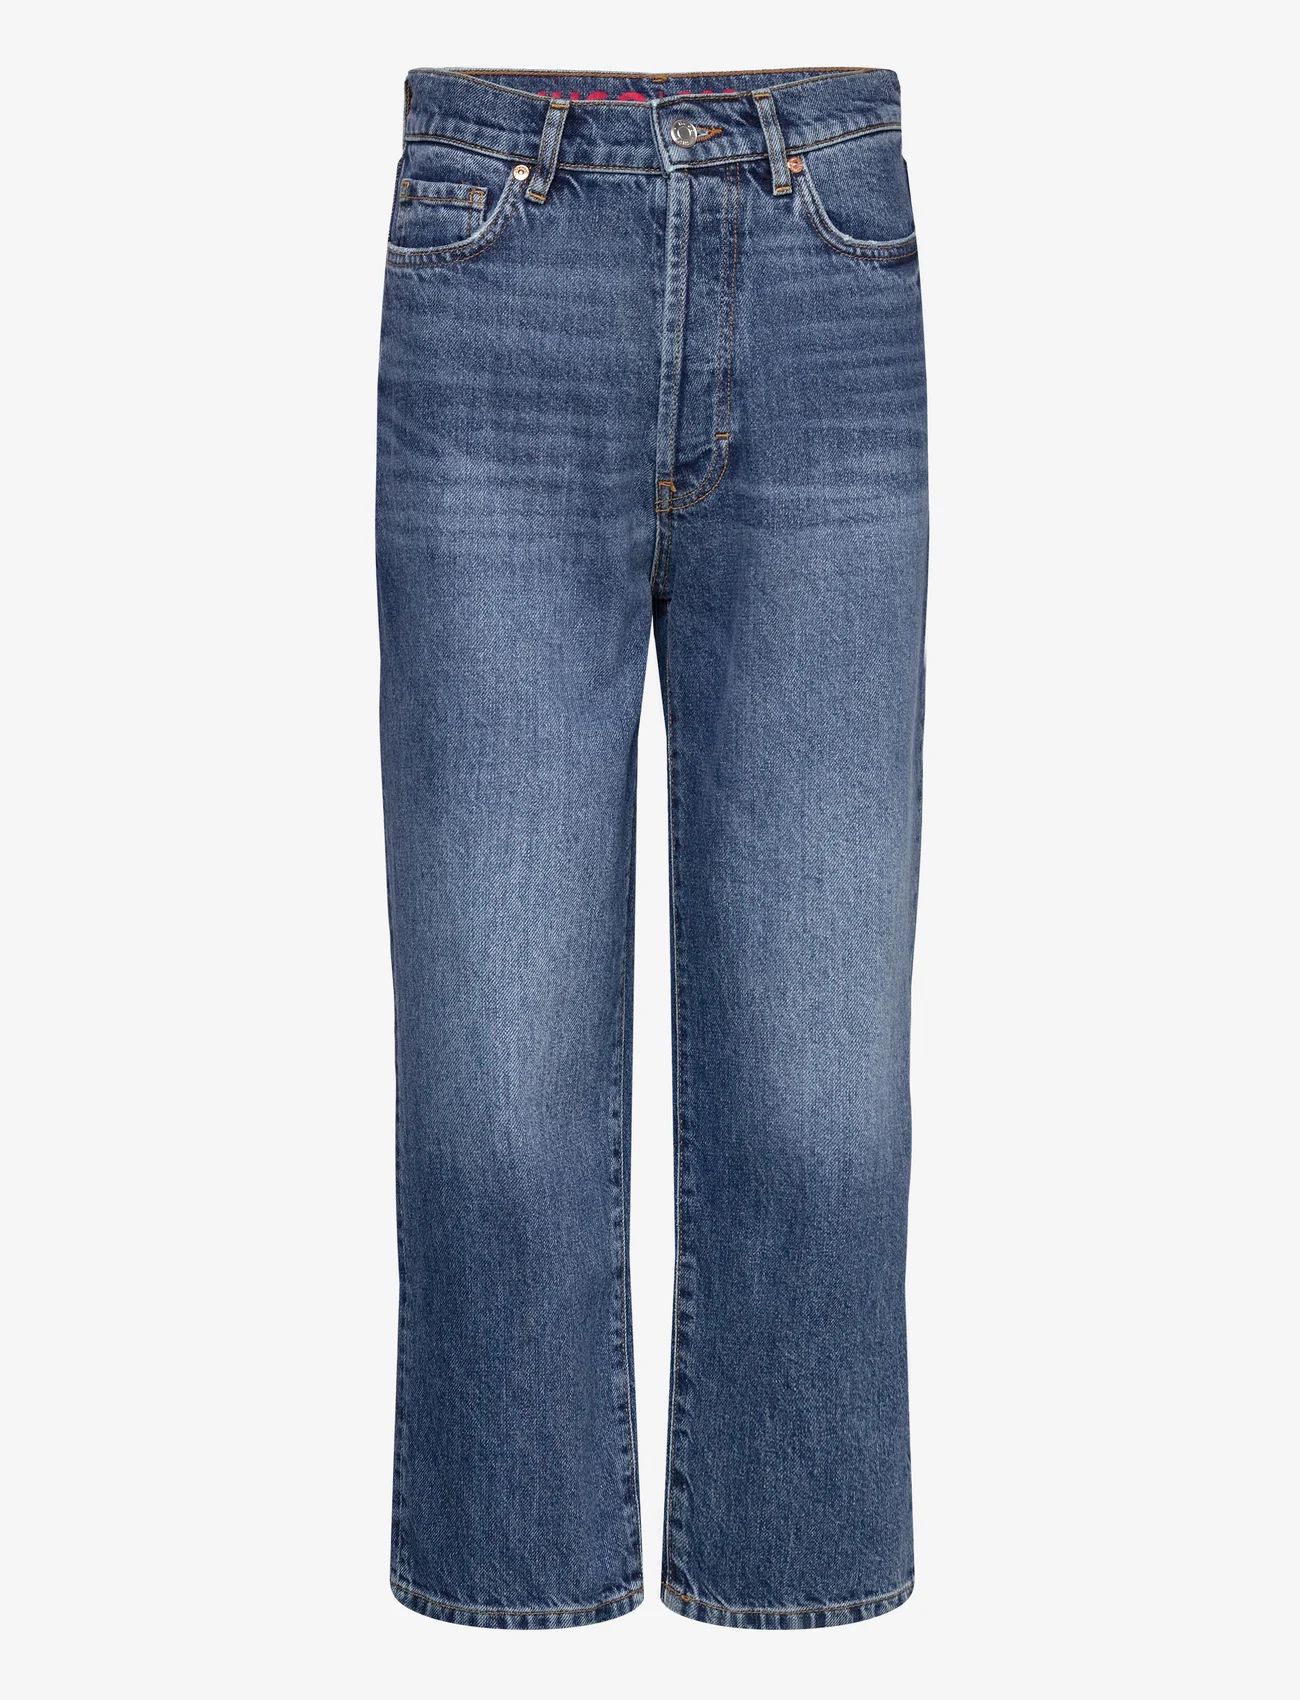 HUGO - 933 - straight jeans - medium blue - 0